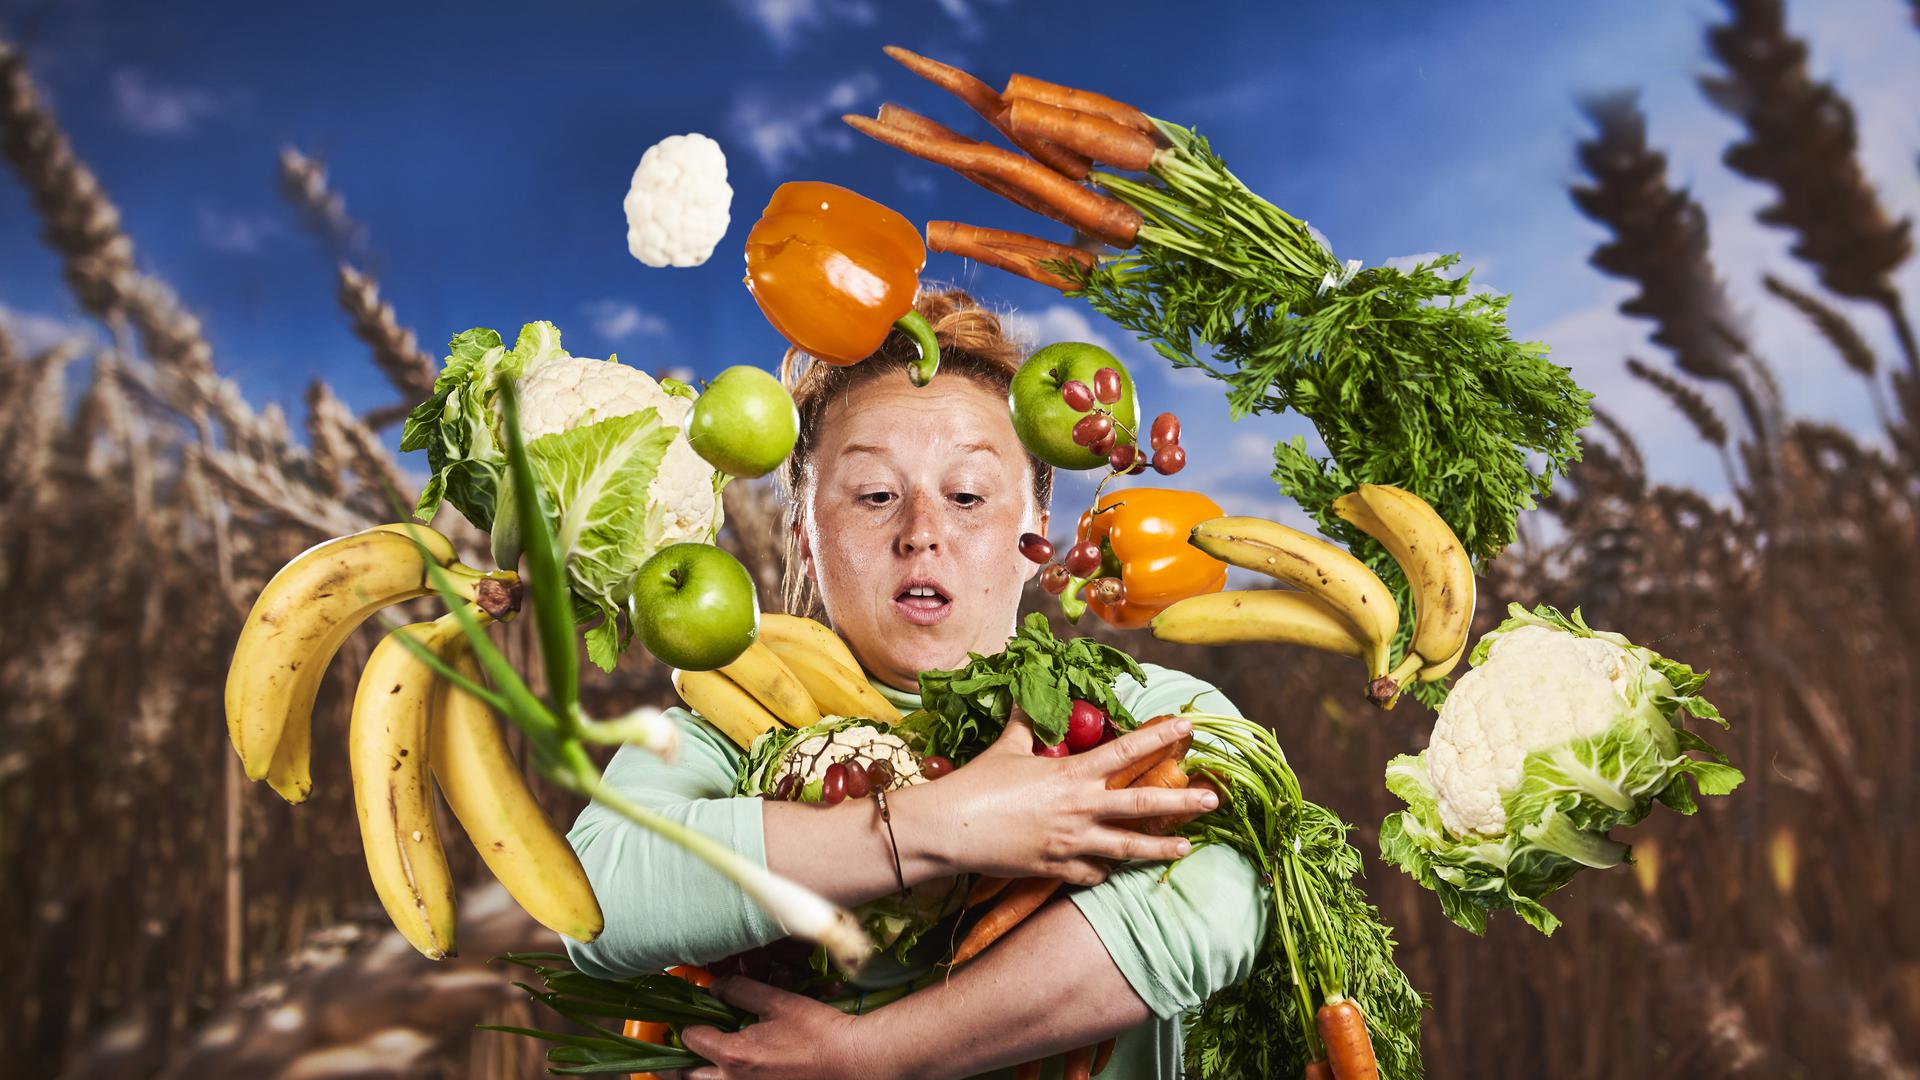 Gemüse, Obst und mehr: Eine Collage zum Thema Essen entsteht am 15. Januar im Badischen Staatstheater in Karlsruhe.